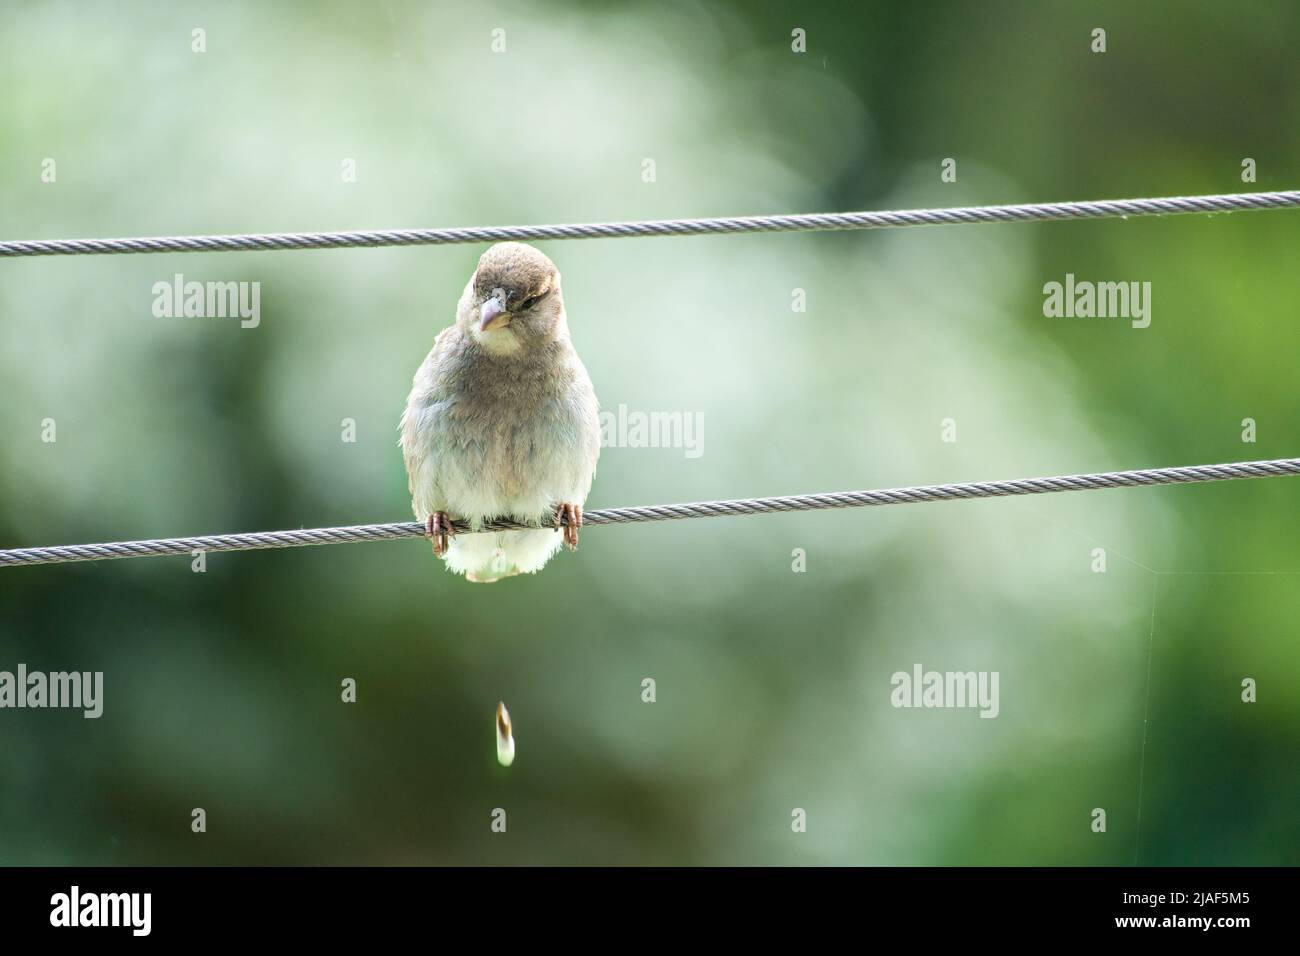 Brauner Sperling, der auf einem Drahtseil sitzt und einen Haufen bildet. Kleiner singvögel mit schönem Gefieder. Der Sperling ist ein gefährdeter Vogel. Aufgenommen in Deutschland Stockfoto